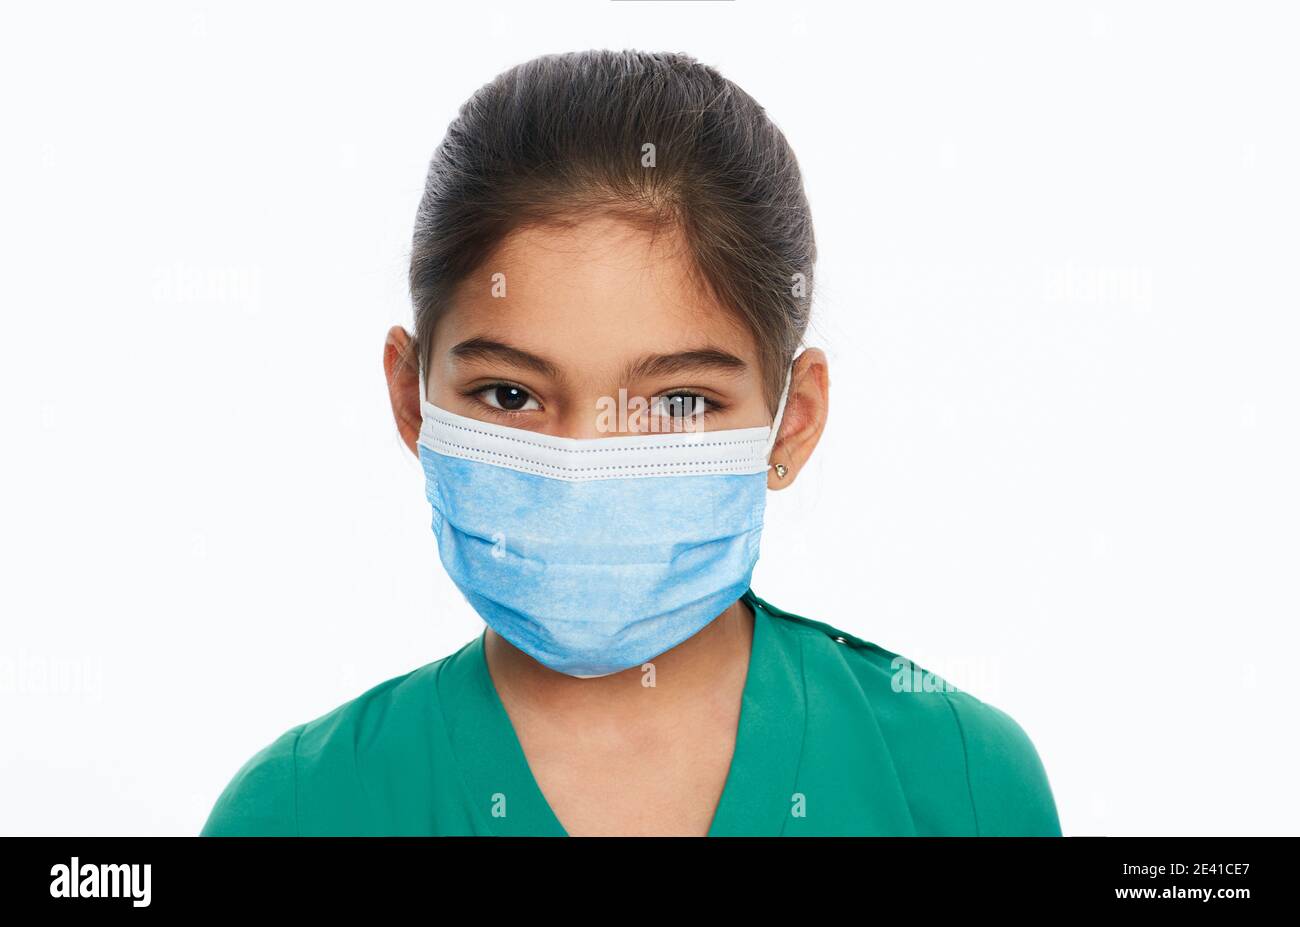 Asiatische Kind Mädchen mit einem chirurgischen Schutz Gesichtsmaske während einer globalen Pandemie, isoliert auf weiß. Schule zu Hause und Selbstisolation, covid-19 Stockfoto